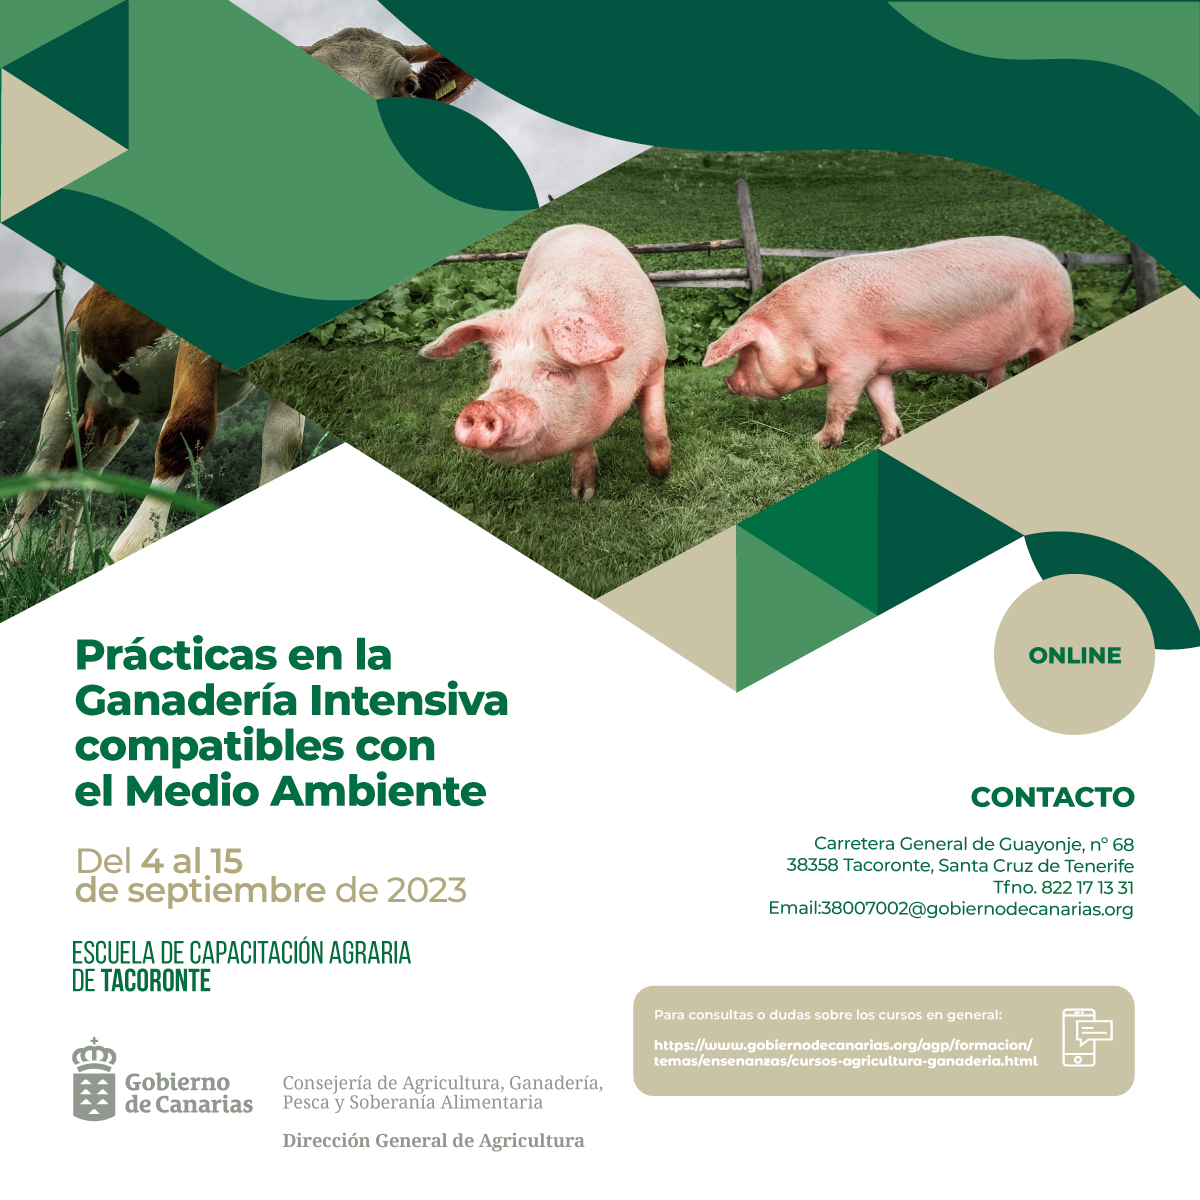 La ECA de Tacoronte imparte un curso sobre prácticas de ganadería intensiva compatibles con el medio ambiente